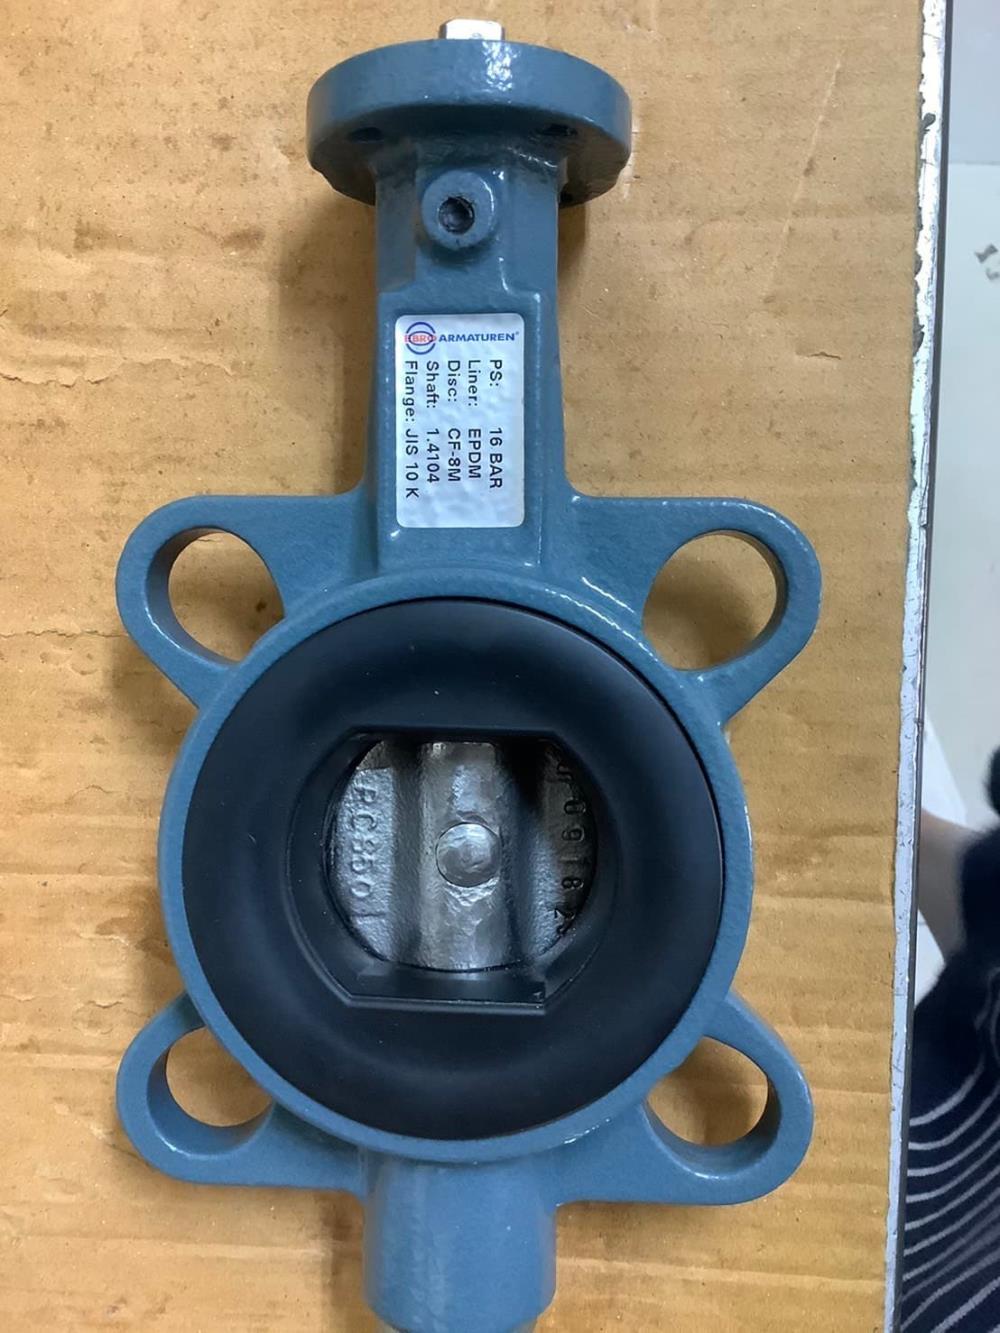 AP01-DA  Sirca actuator หัวขับลม ใช้กับ Buttefly valve size 2"- 4" pressure 0-16bar control 0-10bar เปิด-ปิด น้ำ น้ำมัน กากอาหาร น้ำจิ้ม ก้อนปุ๋ย ต่างๆ ส่งฟรี